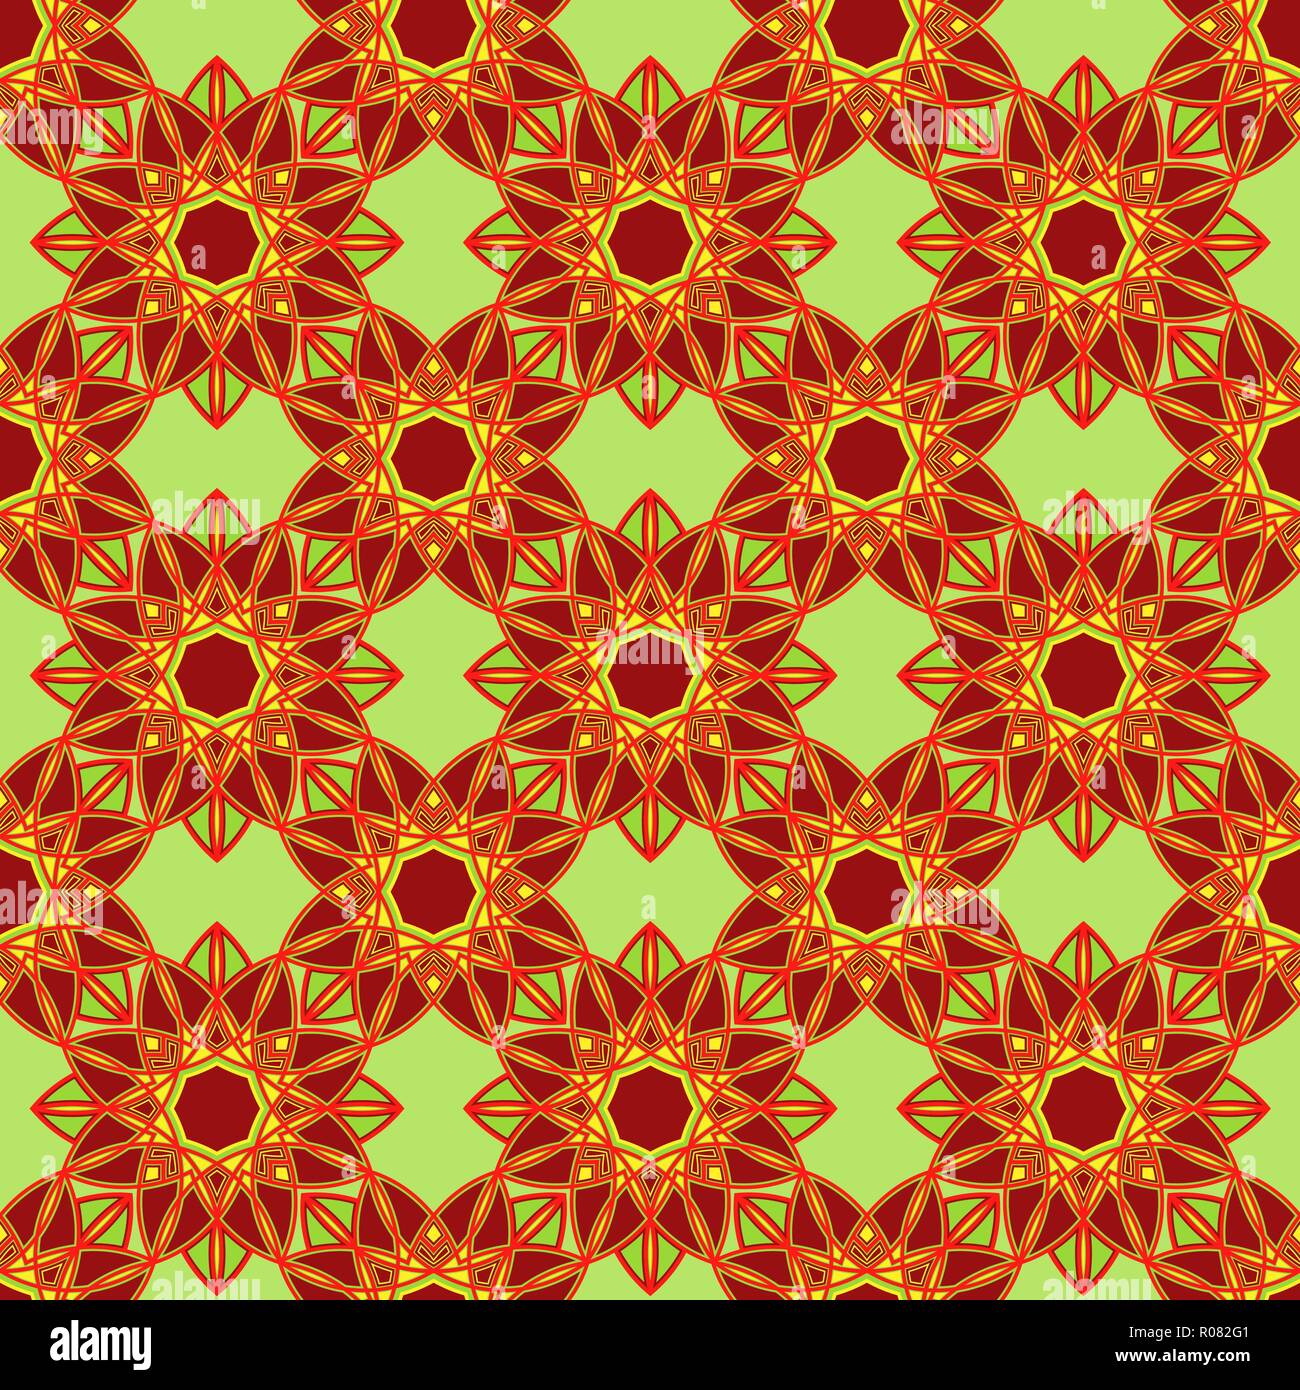 Revanche abstract pattern est constitué de mandala de décoration dans des teintes rouge et verte sur l'arrière-plan, muet comme un vecteur seamless texture tissu Illustration de Vecteur